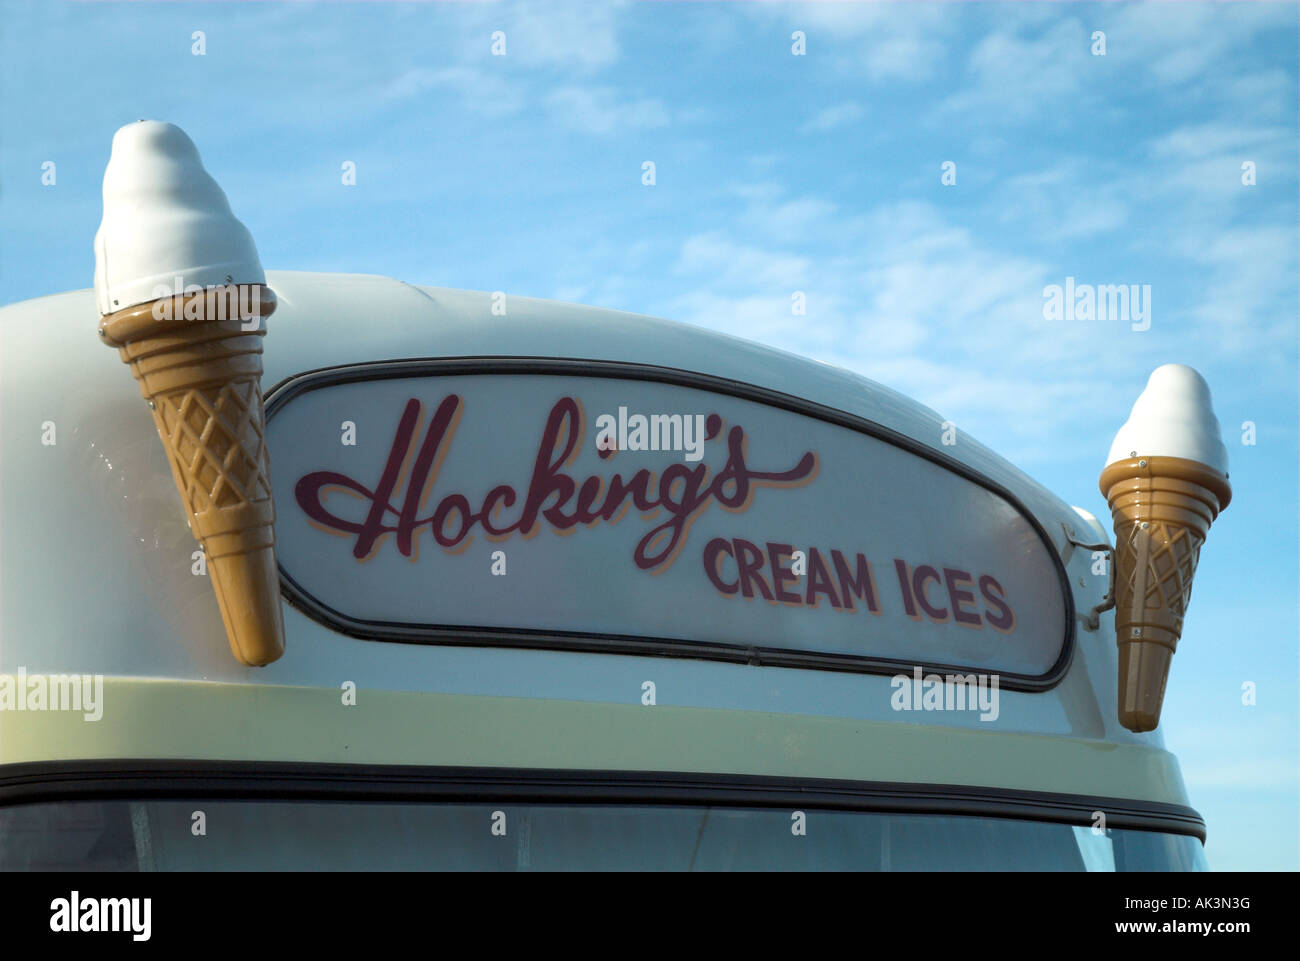 Hocking's Ice Cream Van, Appledore, Devon, England UK Stock Photo